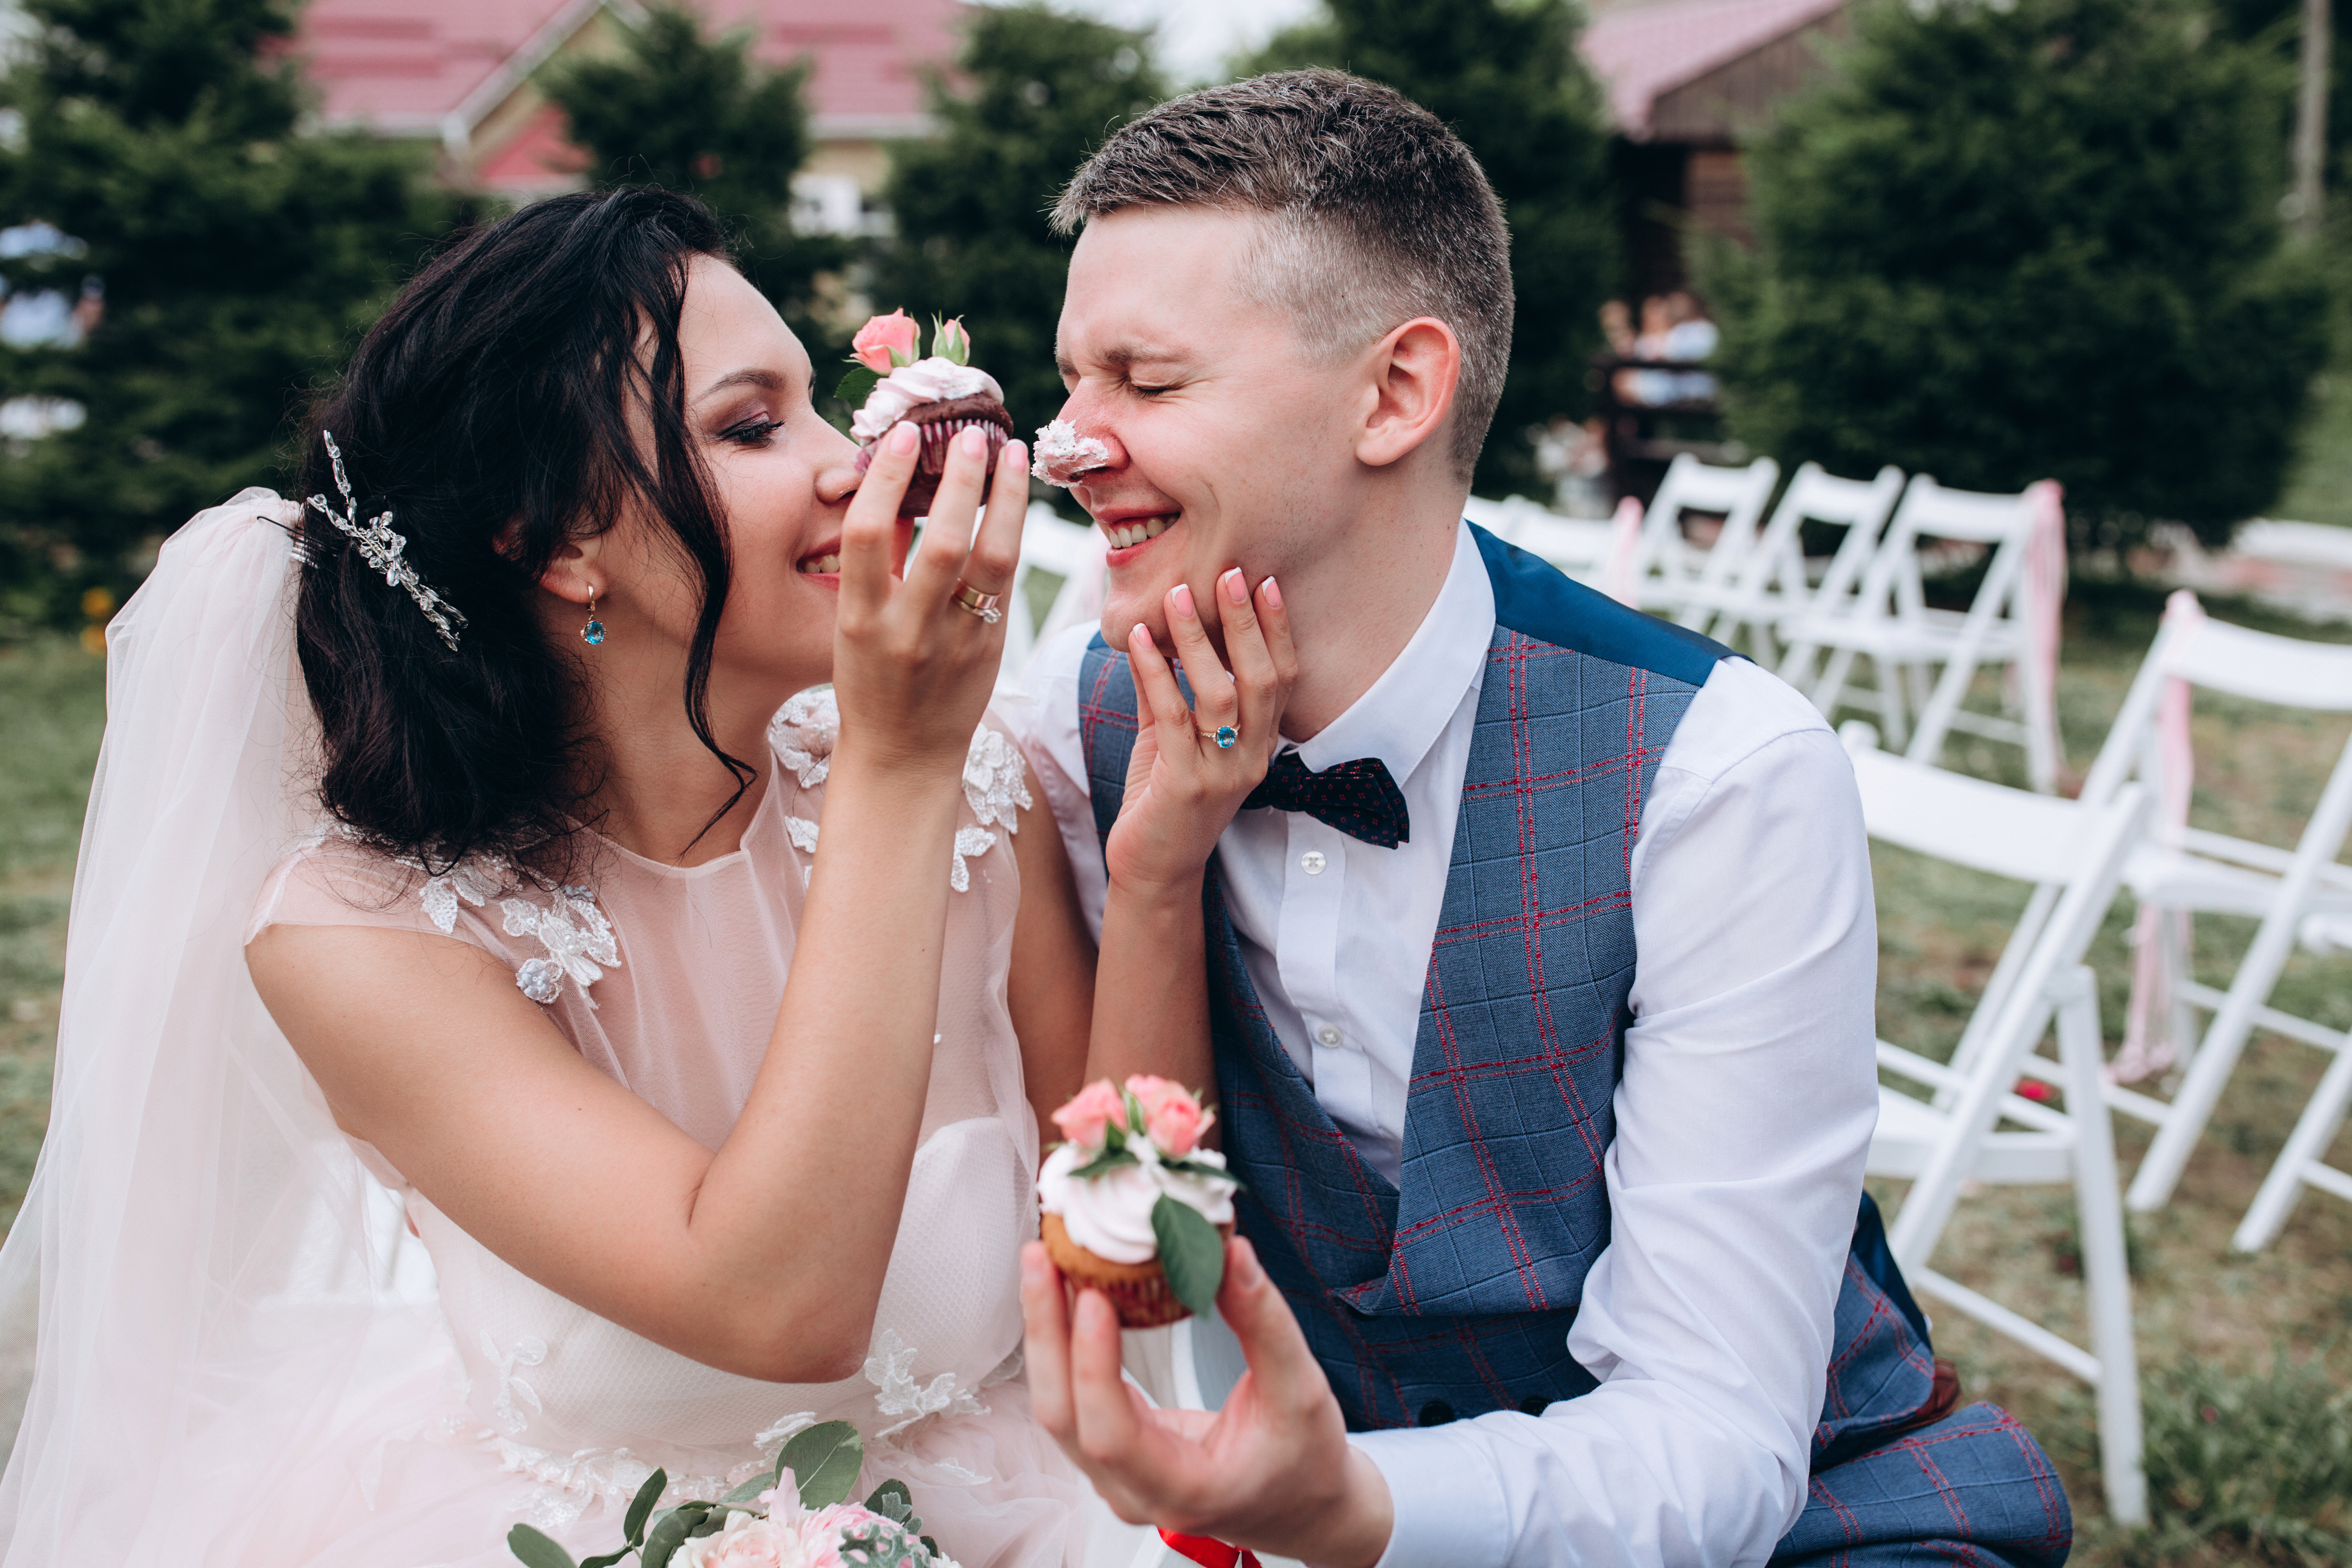 Una novia y un novio | Fuente: Shutterstock